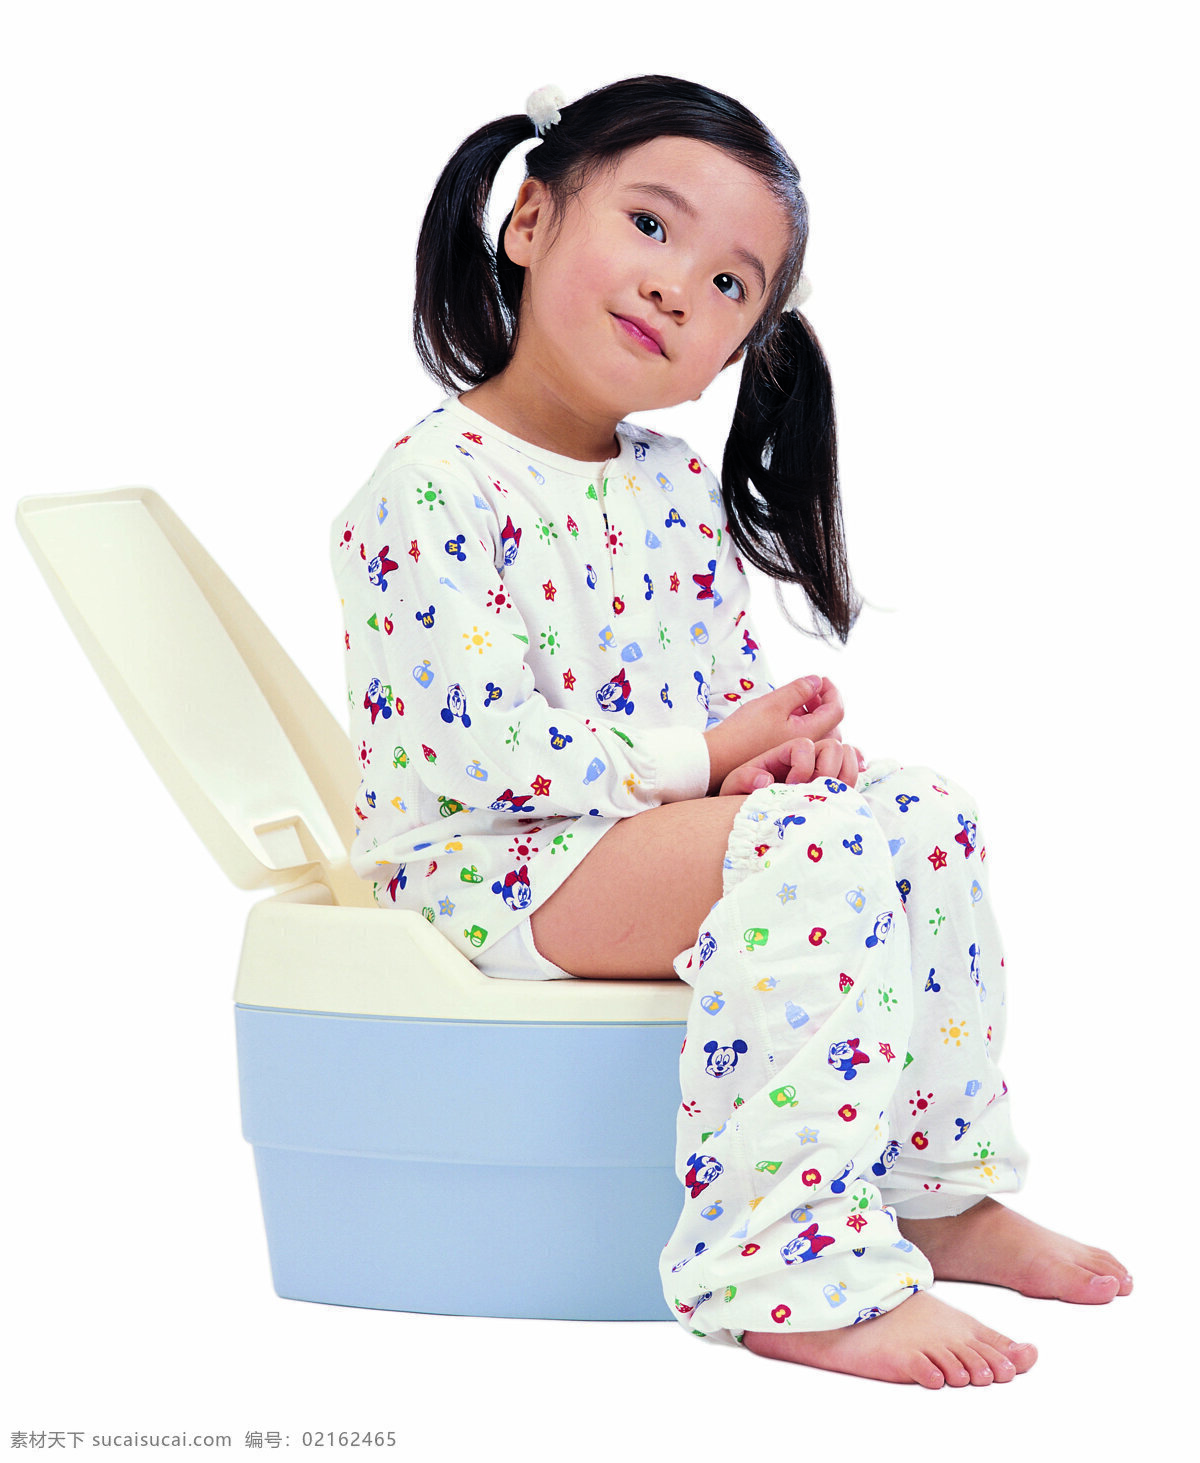 顽皮女孩 儿童 可爱的小女孩 坐在马桶上 微笑 可爱 人物图库 儿童幼儿 摄影图库